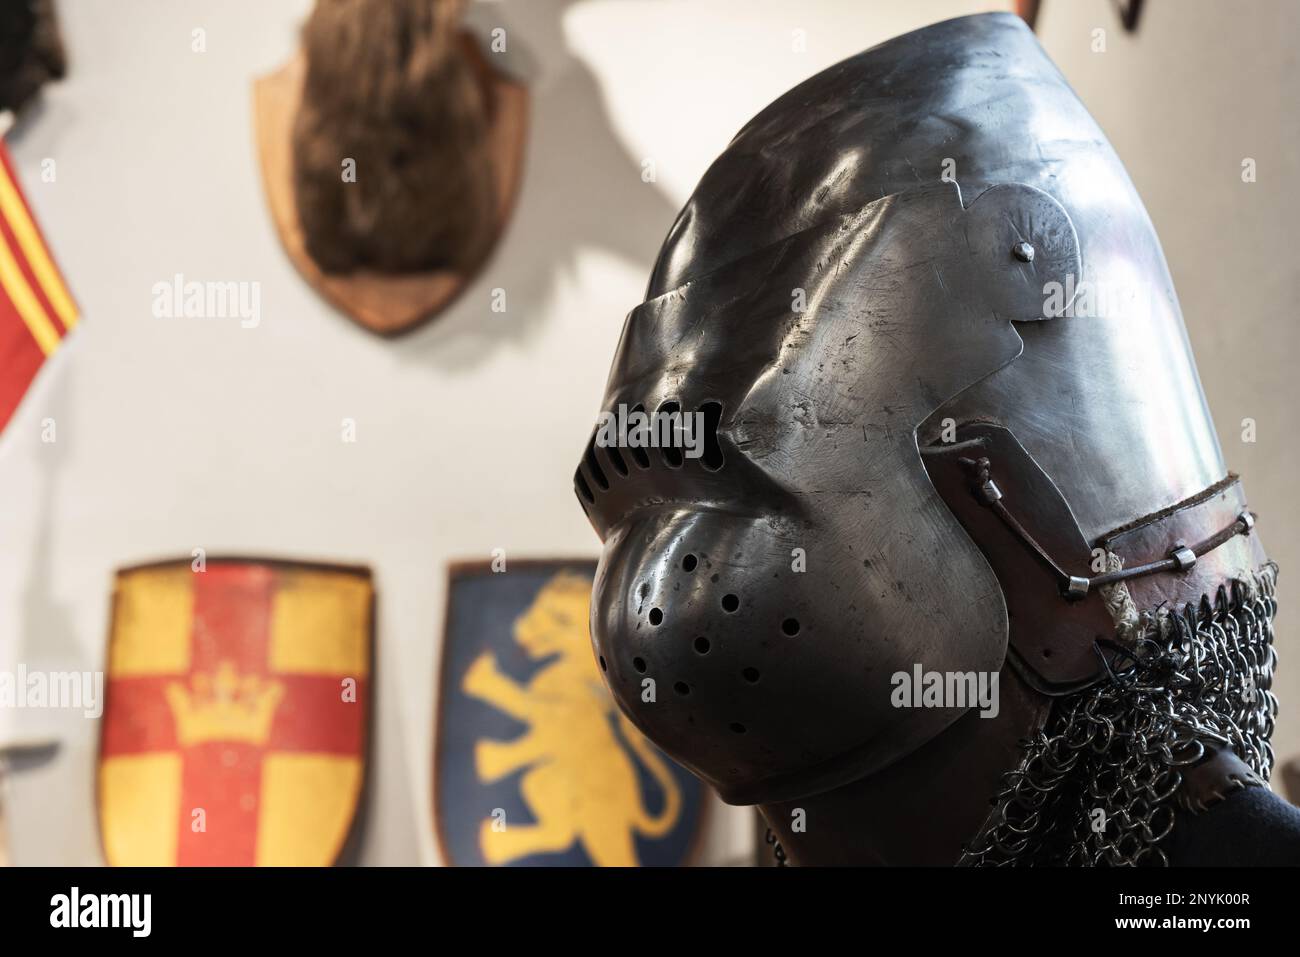 Armatura medievale del cavaliere, casco in ferro chiuso, foto ravvicinata con messa a fuoco morbida selettiva Foto Stock